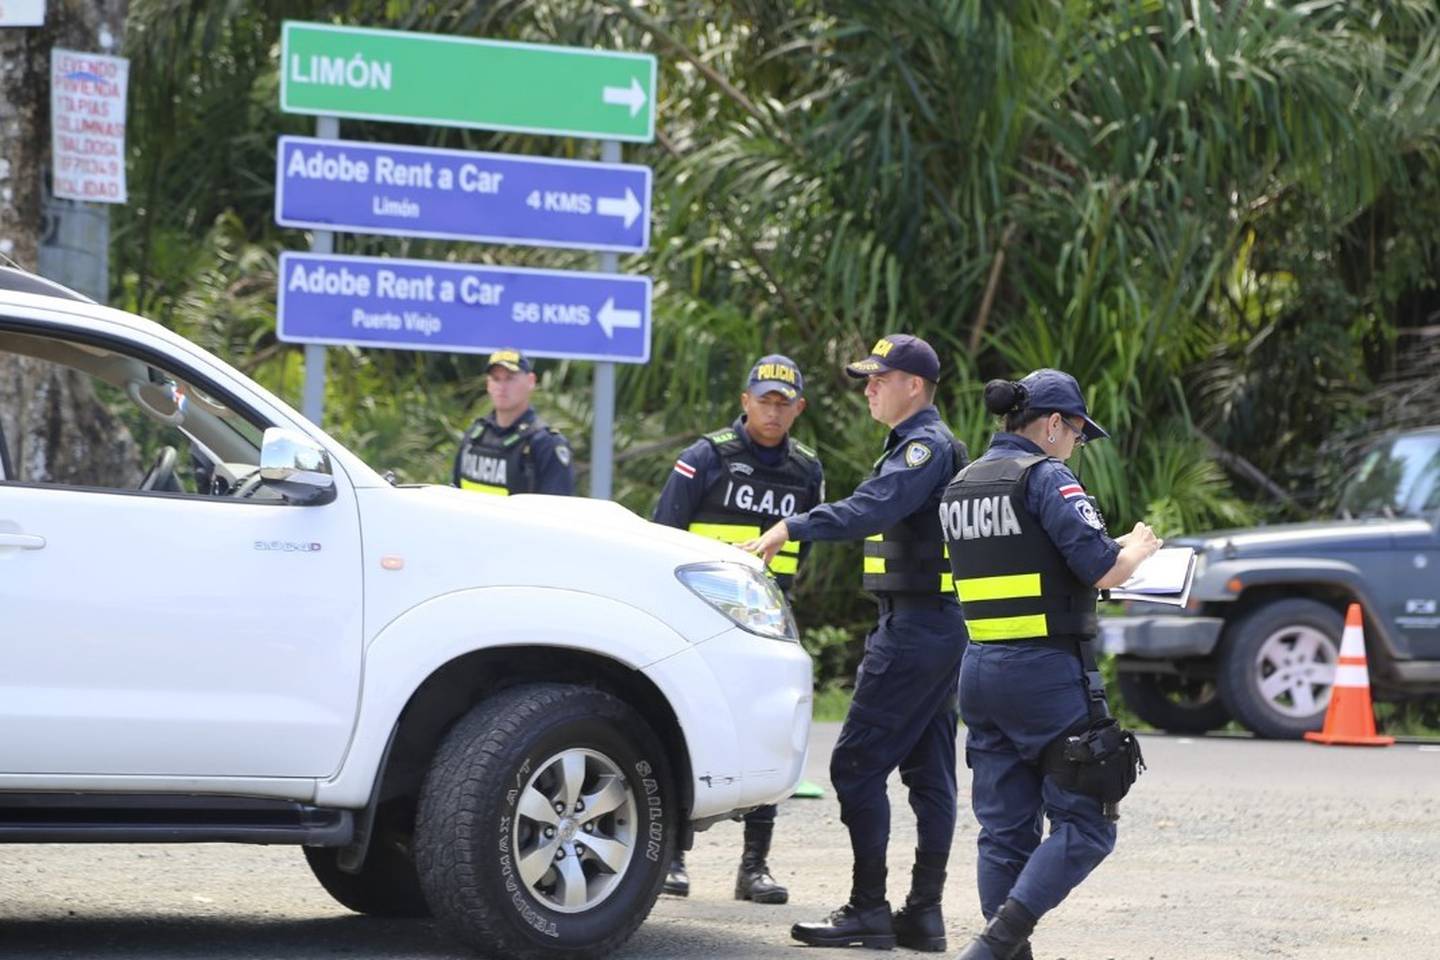 Algunos cantones de Limón como Siquirres, Matina y Pococí tienen refuerzos policiales para contrarrestar la inseguridad. Foto: Cortesía MSP.